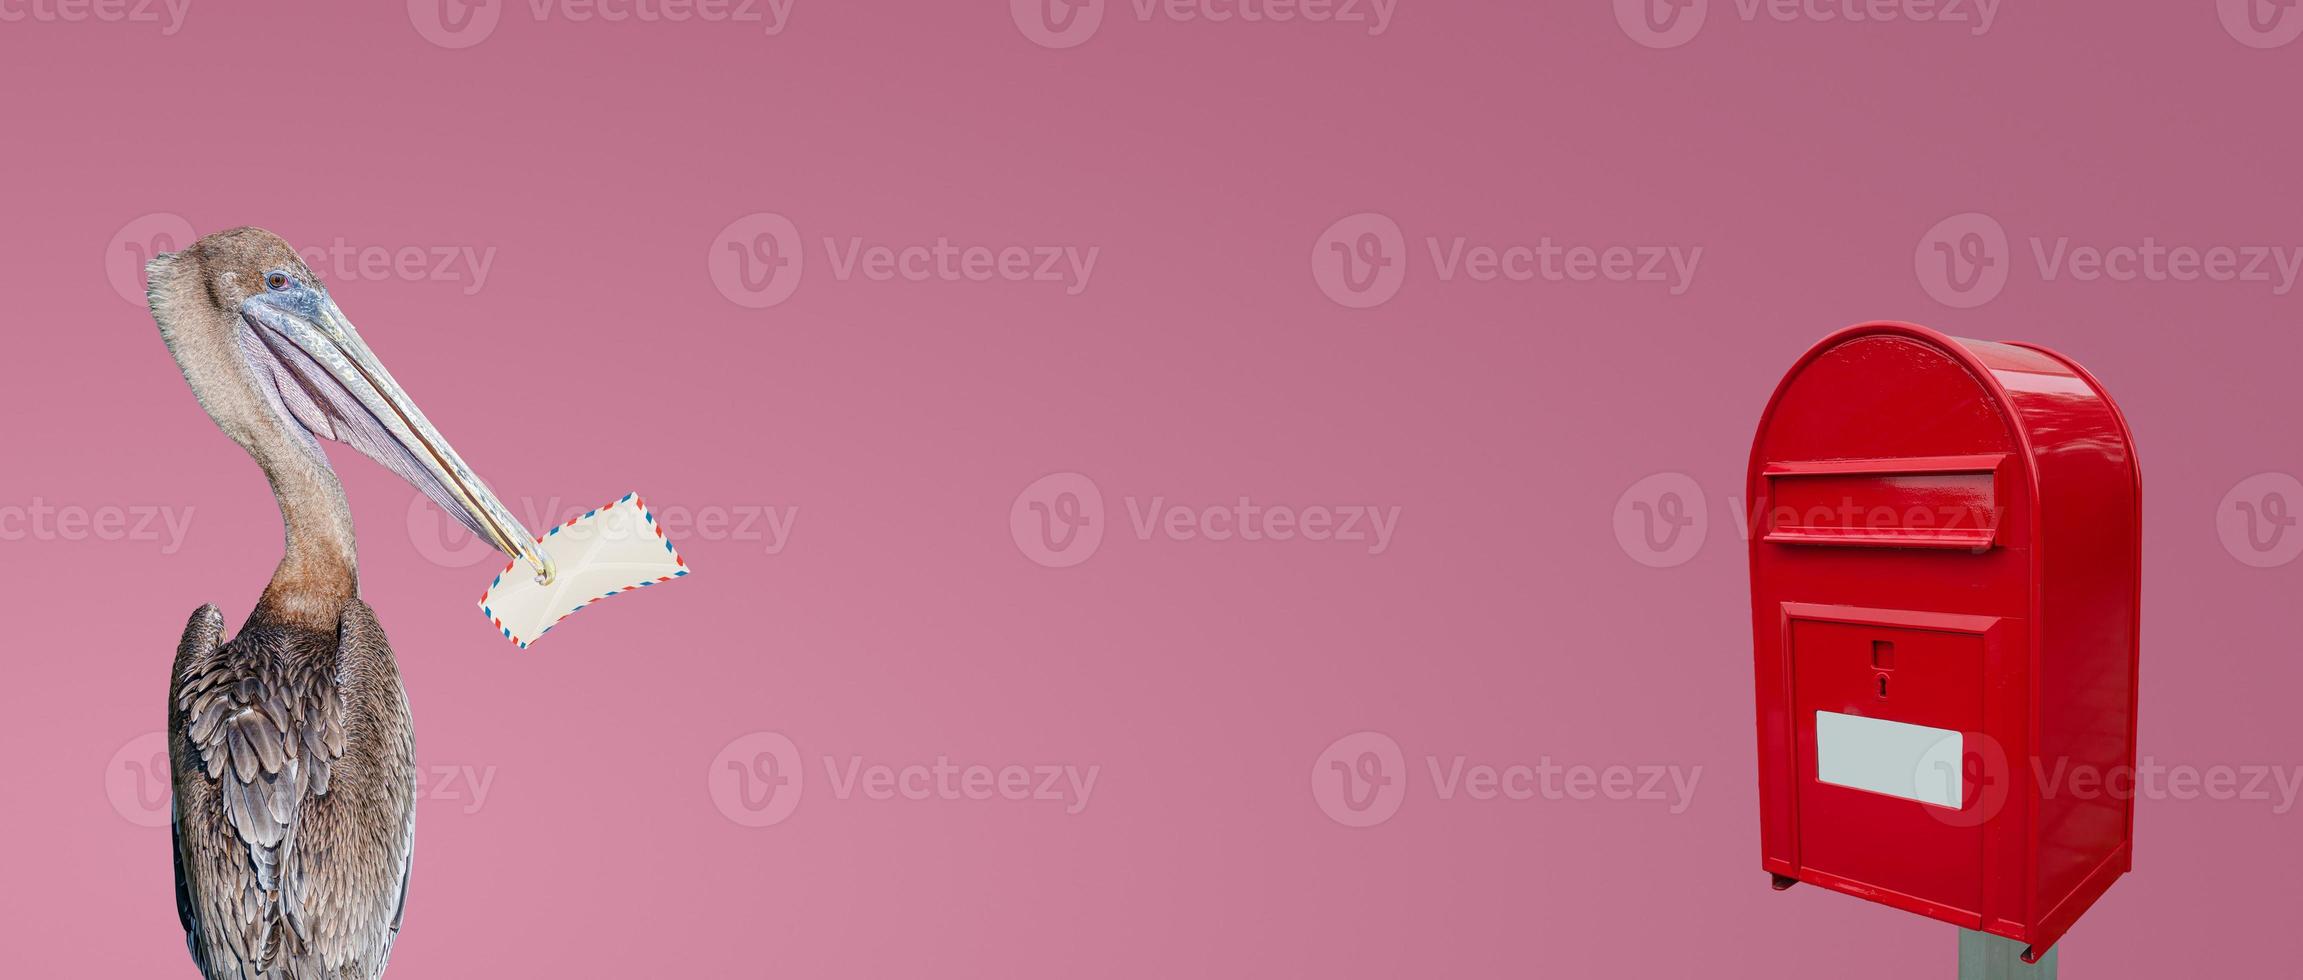 pancarta con un gran buzón de correos rojo y elegante con espacio de nota vacía en blanco para la dirección y un pelícano sosteniendo en su pico una carta en un fondo rosa degradado o rosado con espacio de copia para el texto. foto